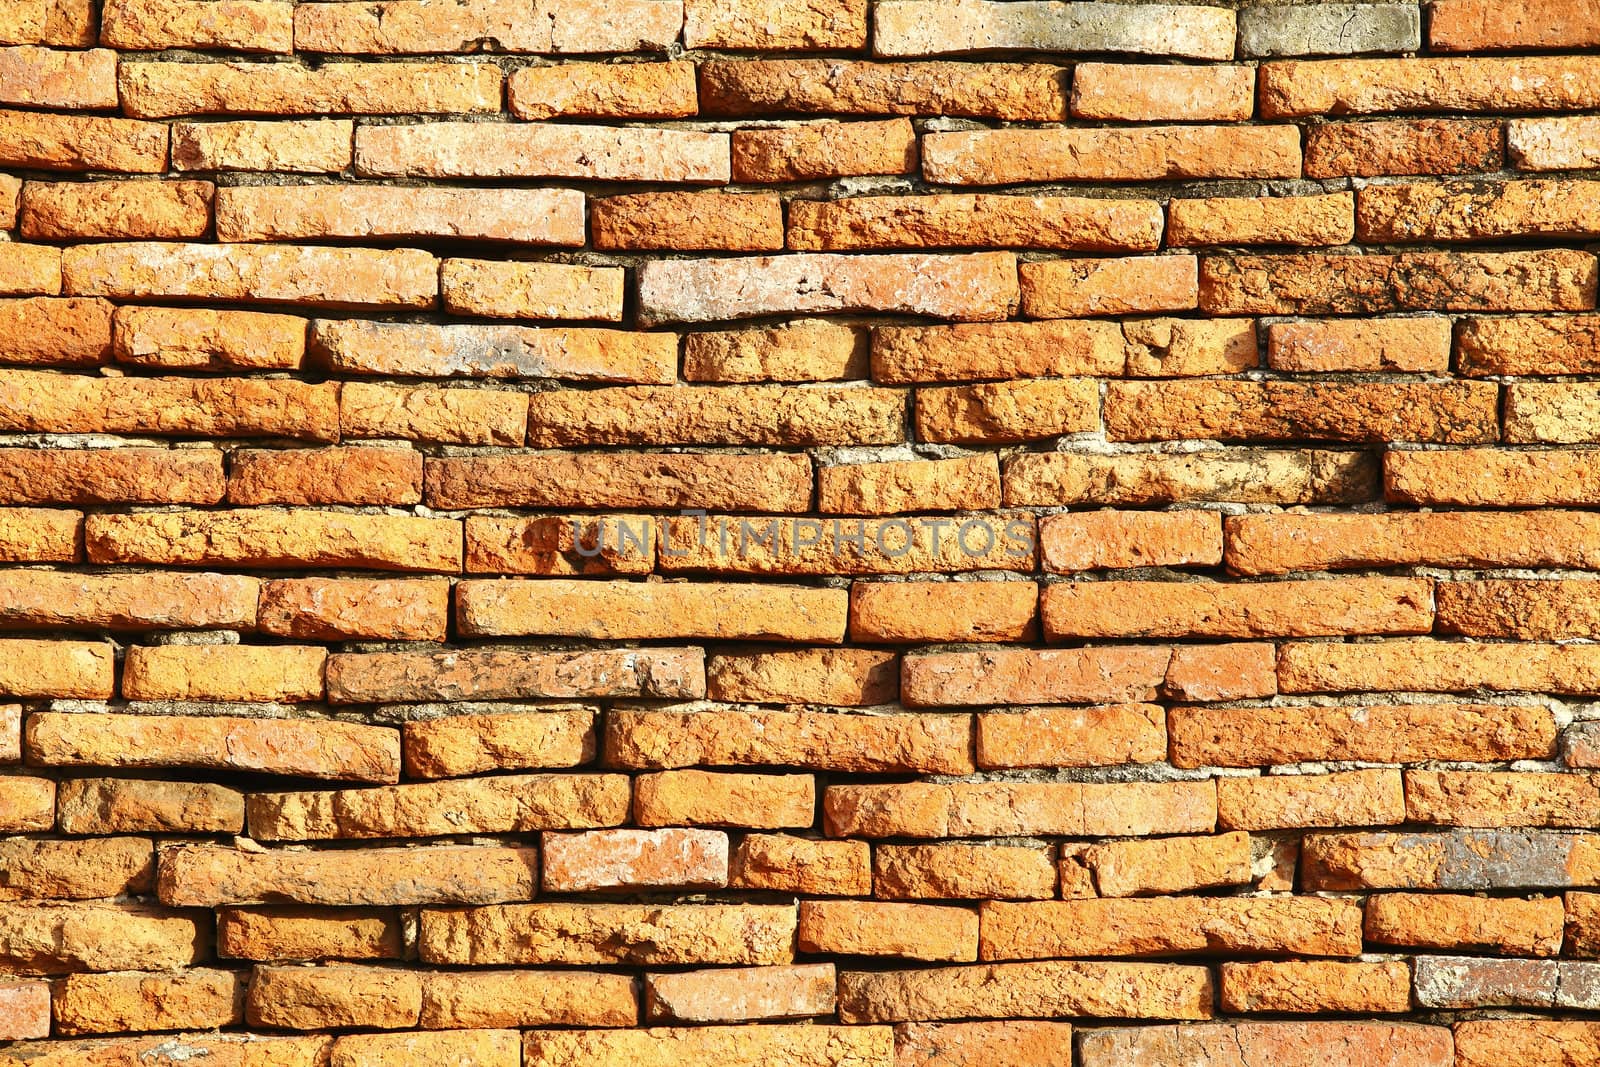 Texture of old brick wall  at Ayudhaya near Bangkok, Thailand.